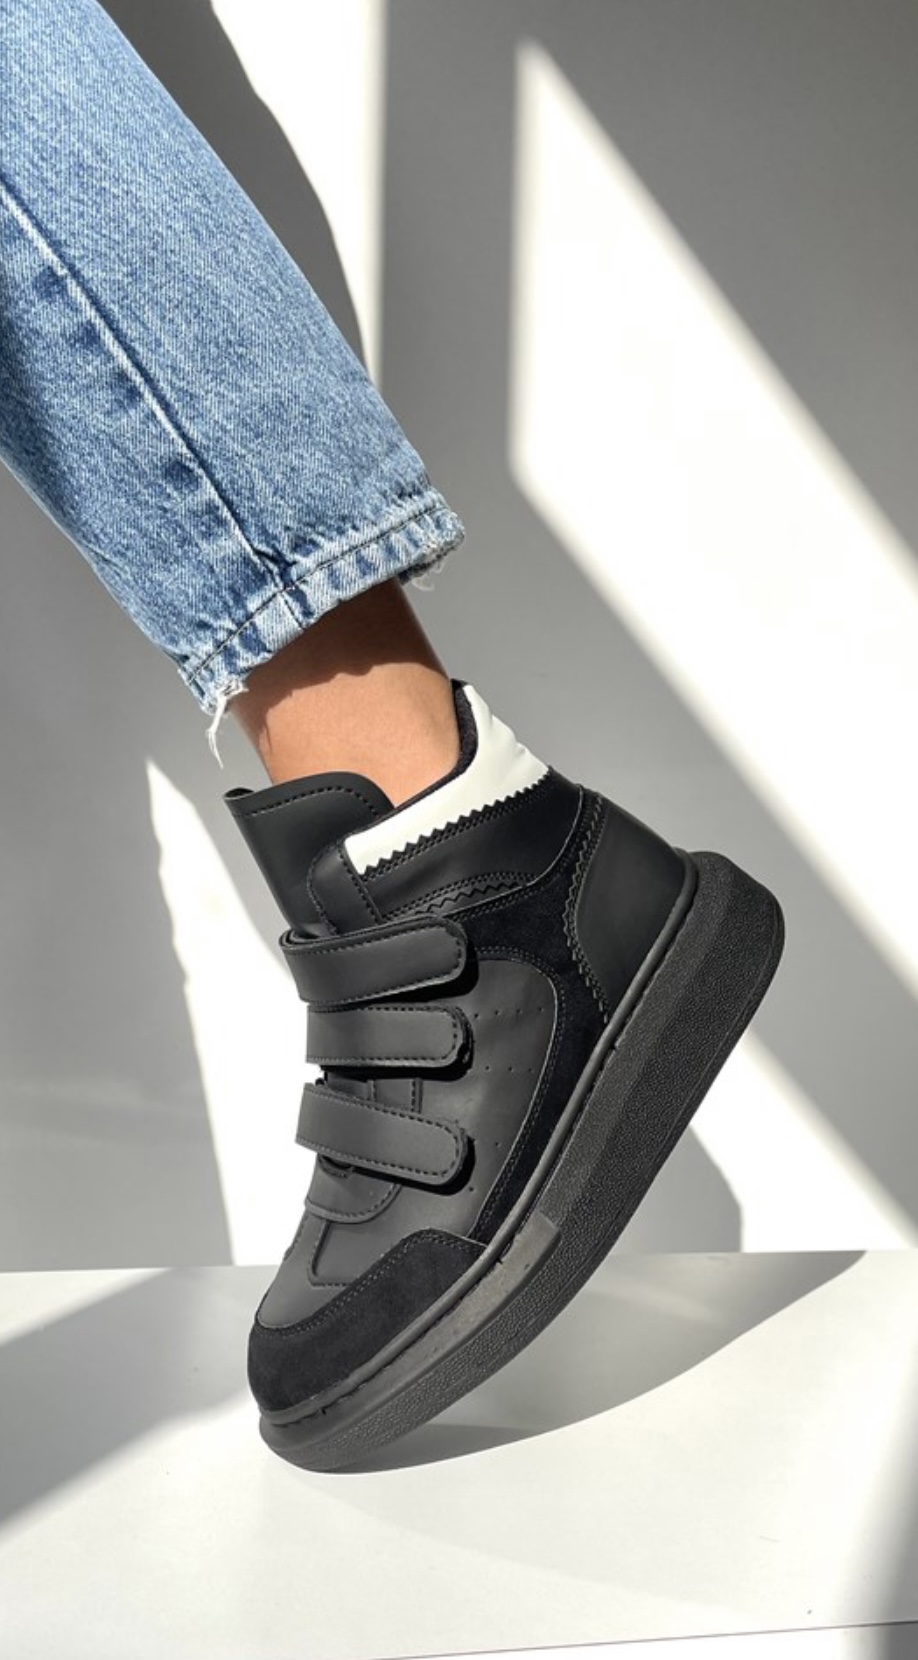 High Top Black Sneakers